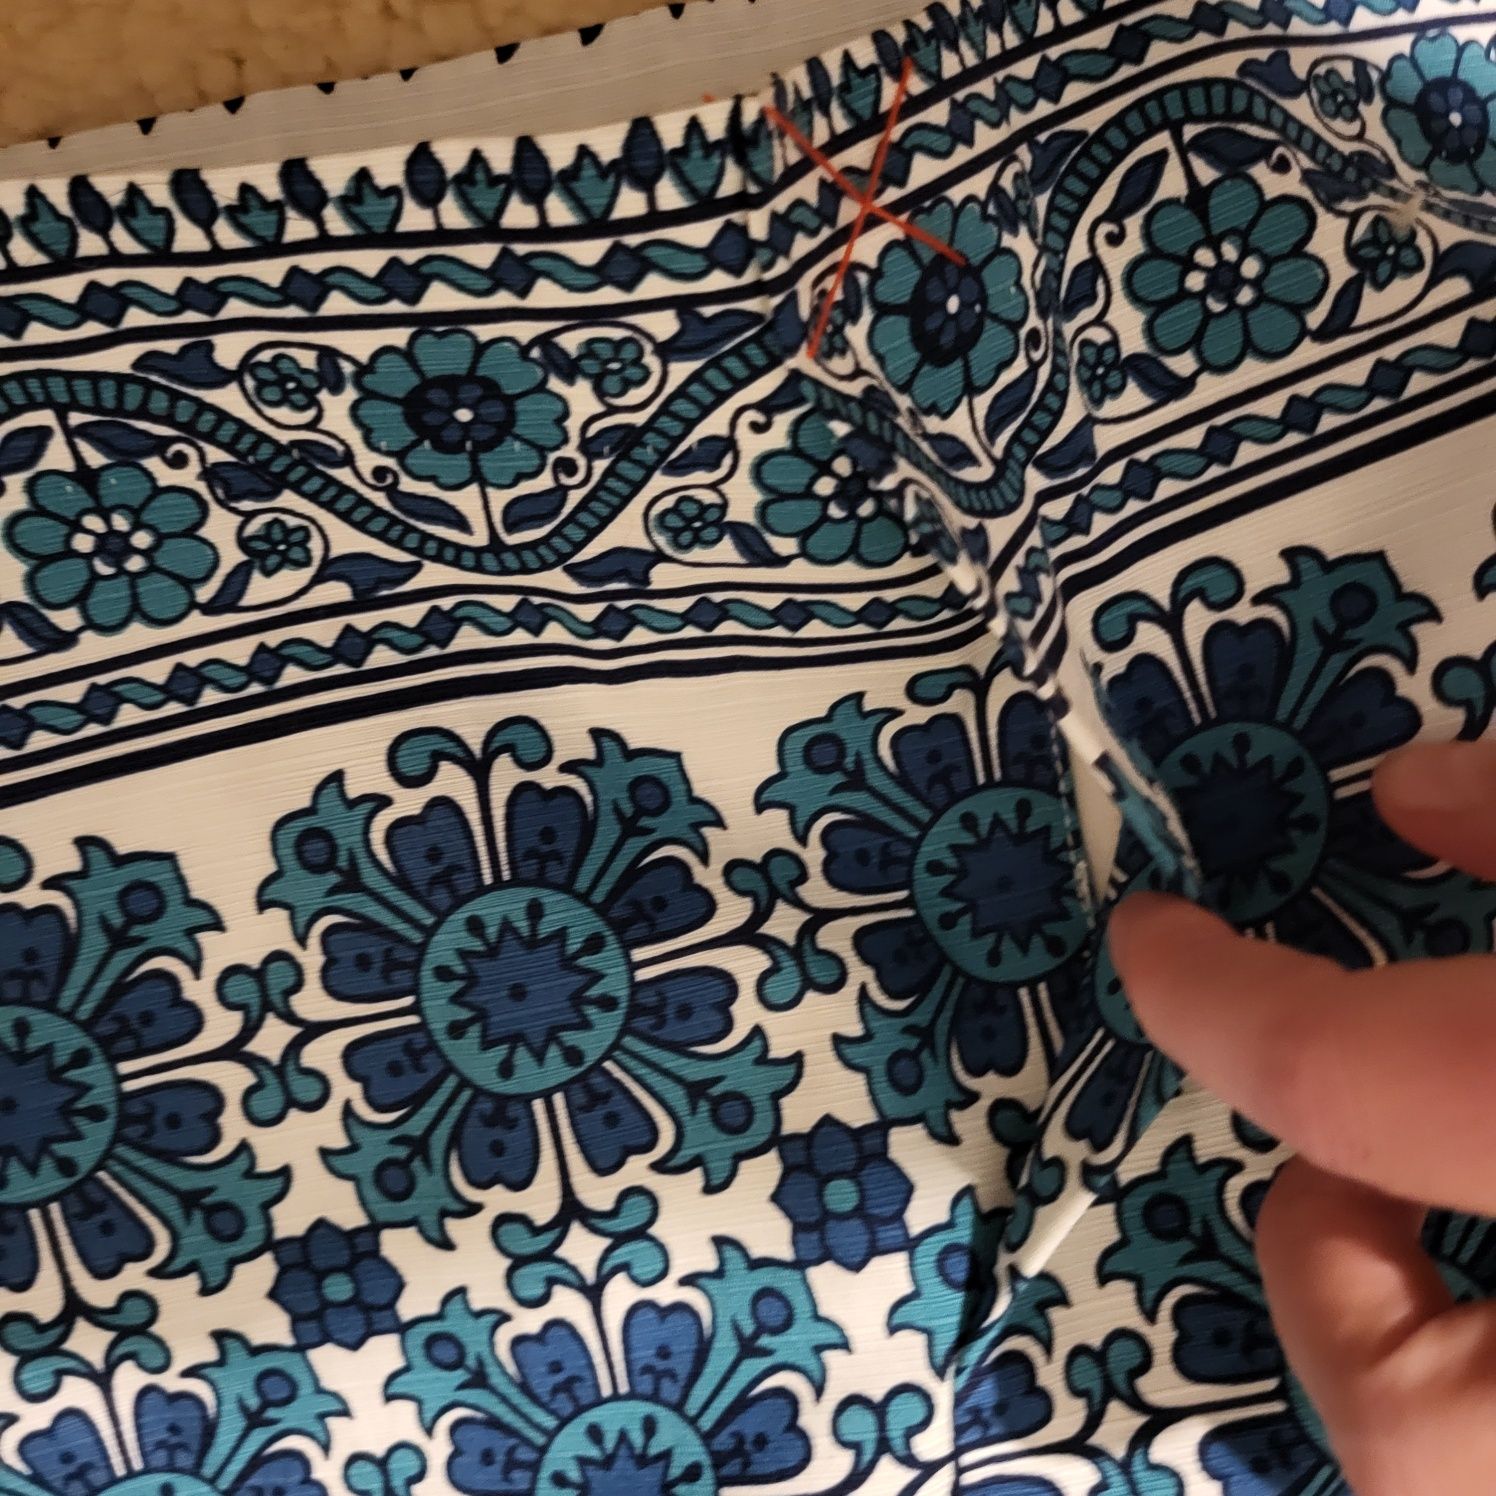 Nowa spodnica marki Boden unikat Mozaika r.44 bawełna